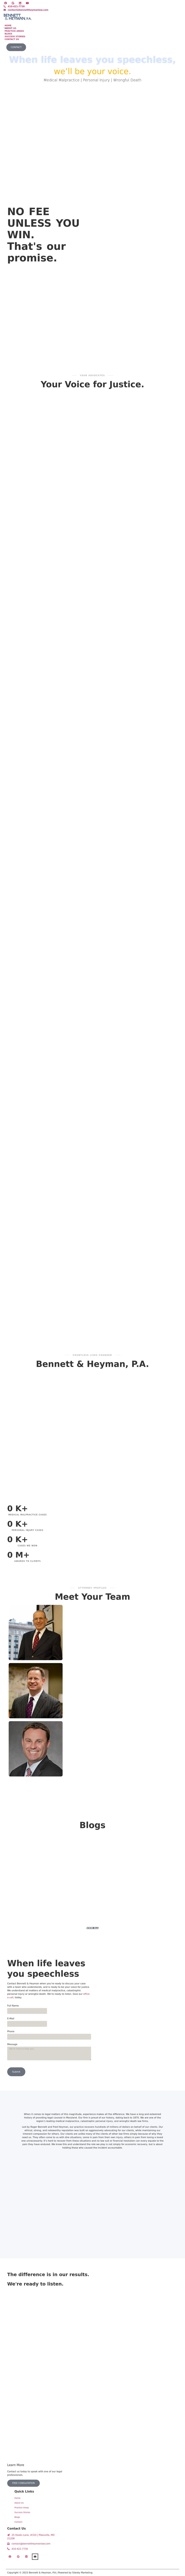 Bennett & Heyman, P.A. - Pikesville MD Lawyers